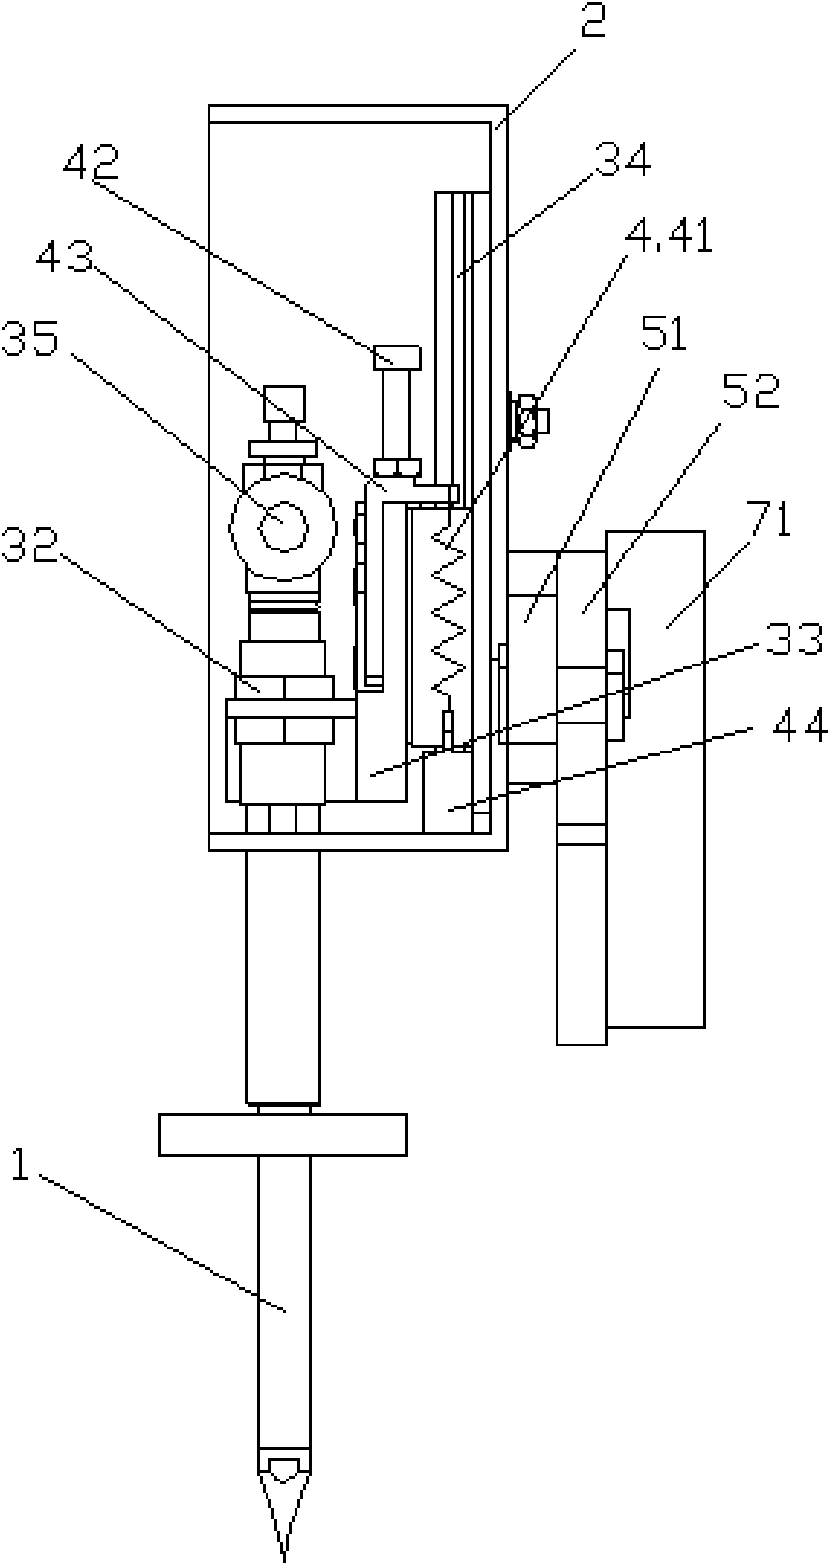 Soldering bit mechanism of automatic soldering robot